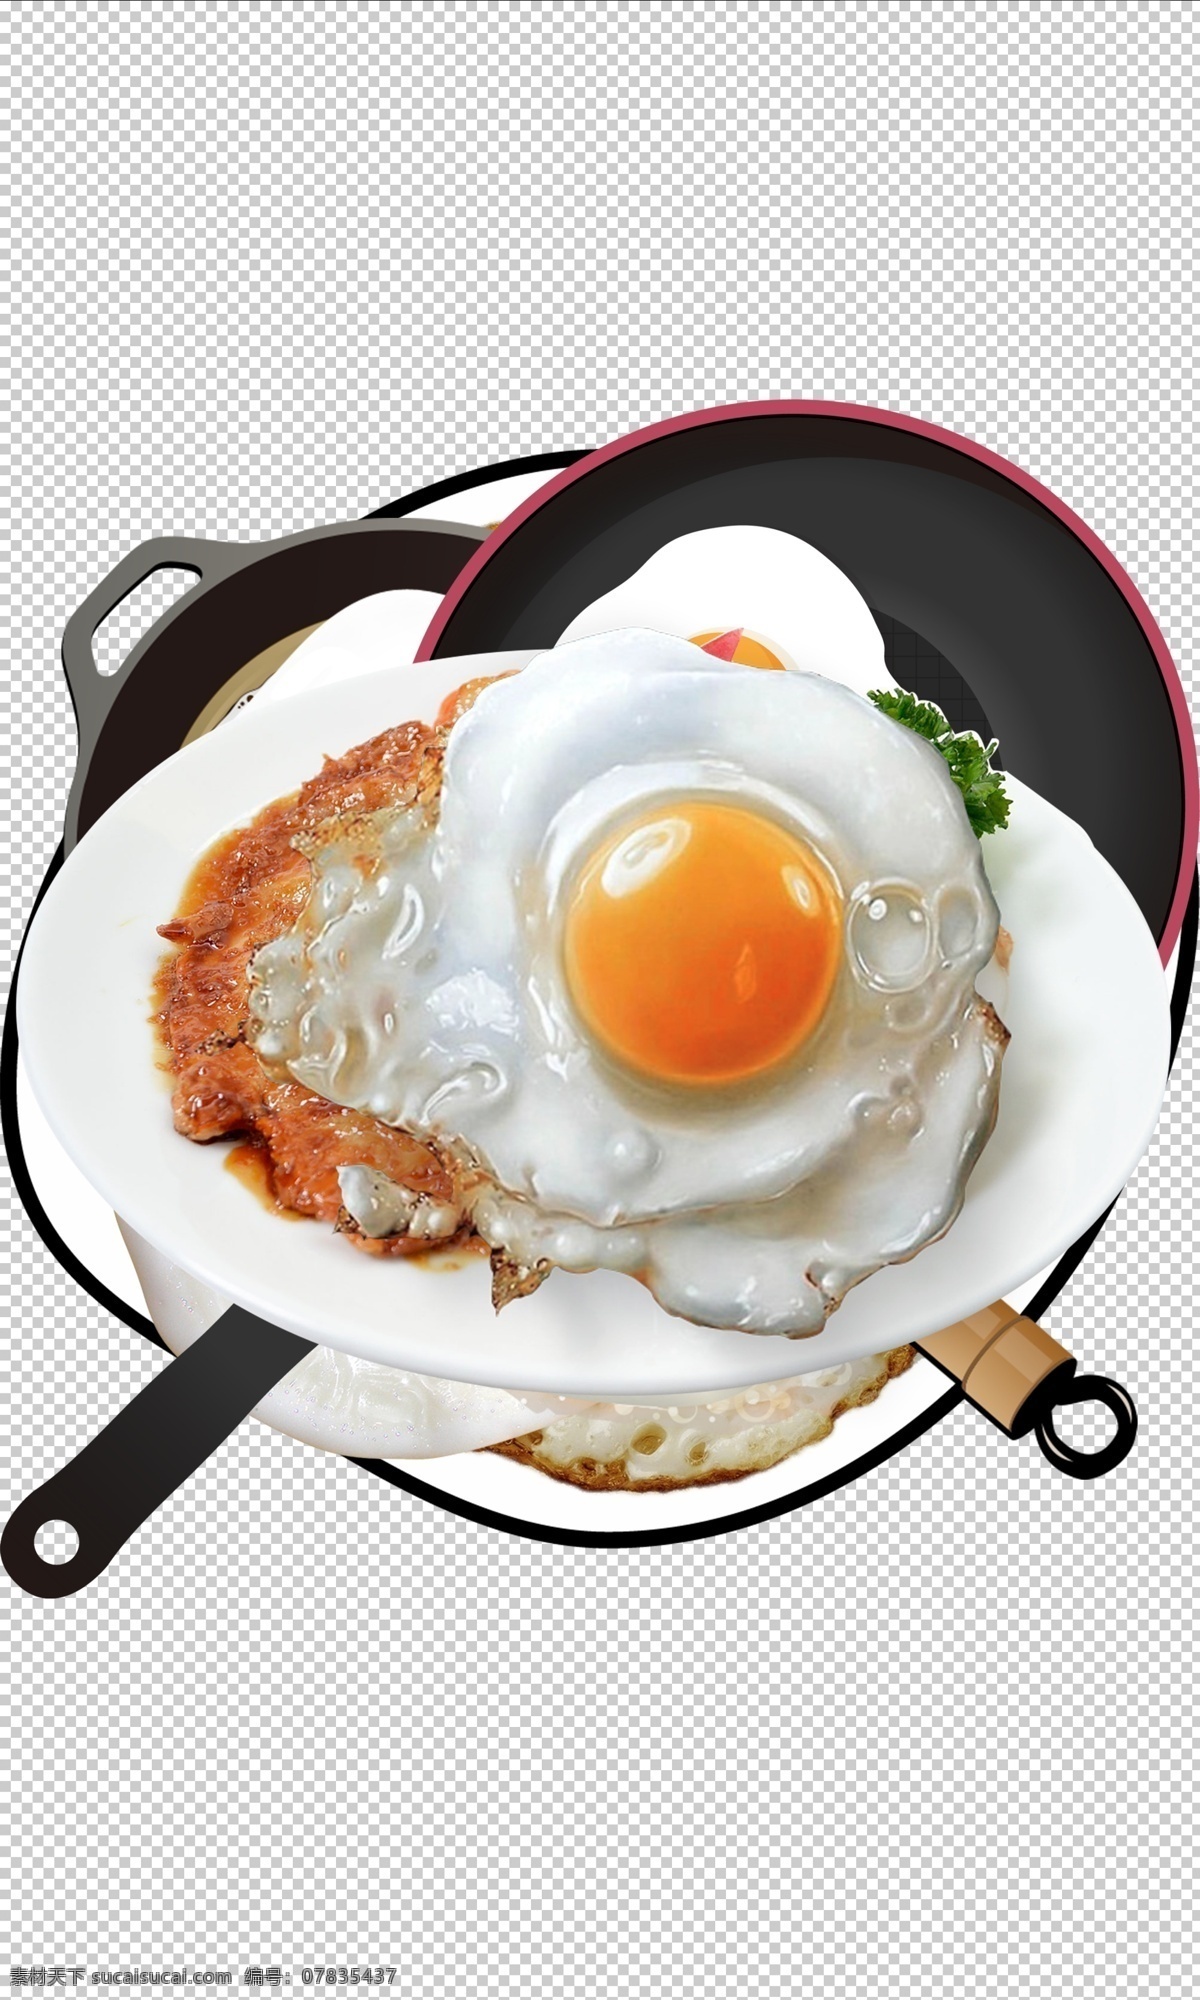 荷包蛋 煎蛋 早餐 煎 鸡蛋 煎鸡蛋 煎荷包蛋 美味 免抠 分层